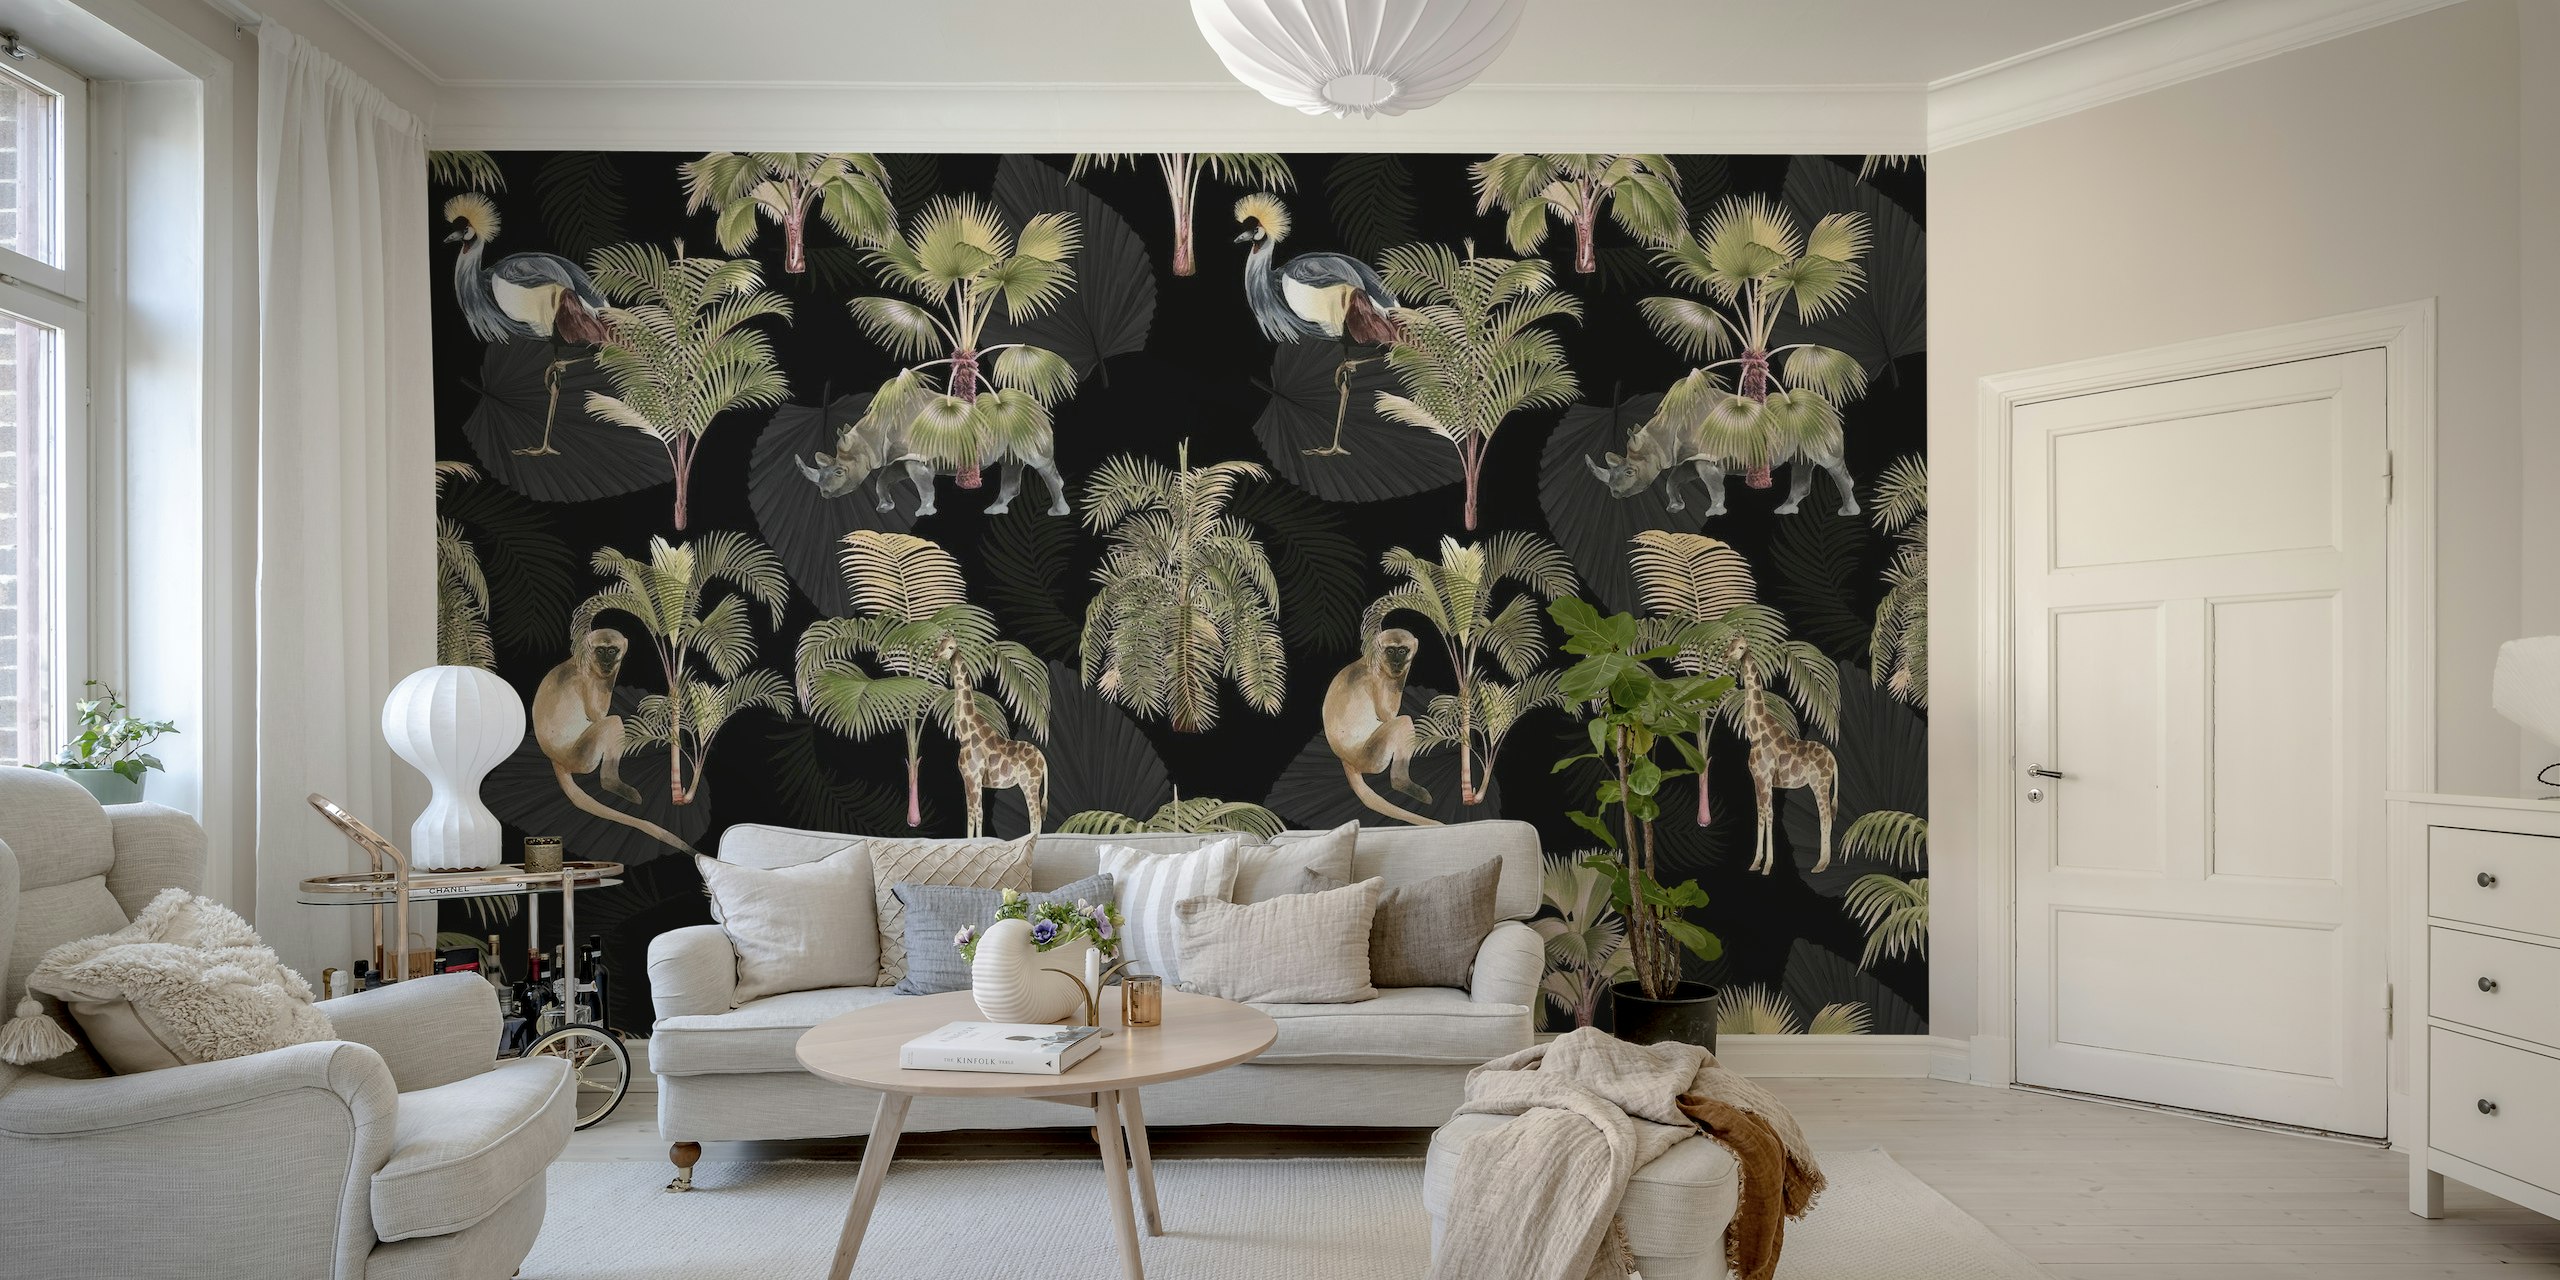 Exotische dieren en palmbomen op een donkere achtergrondmuurschildering